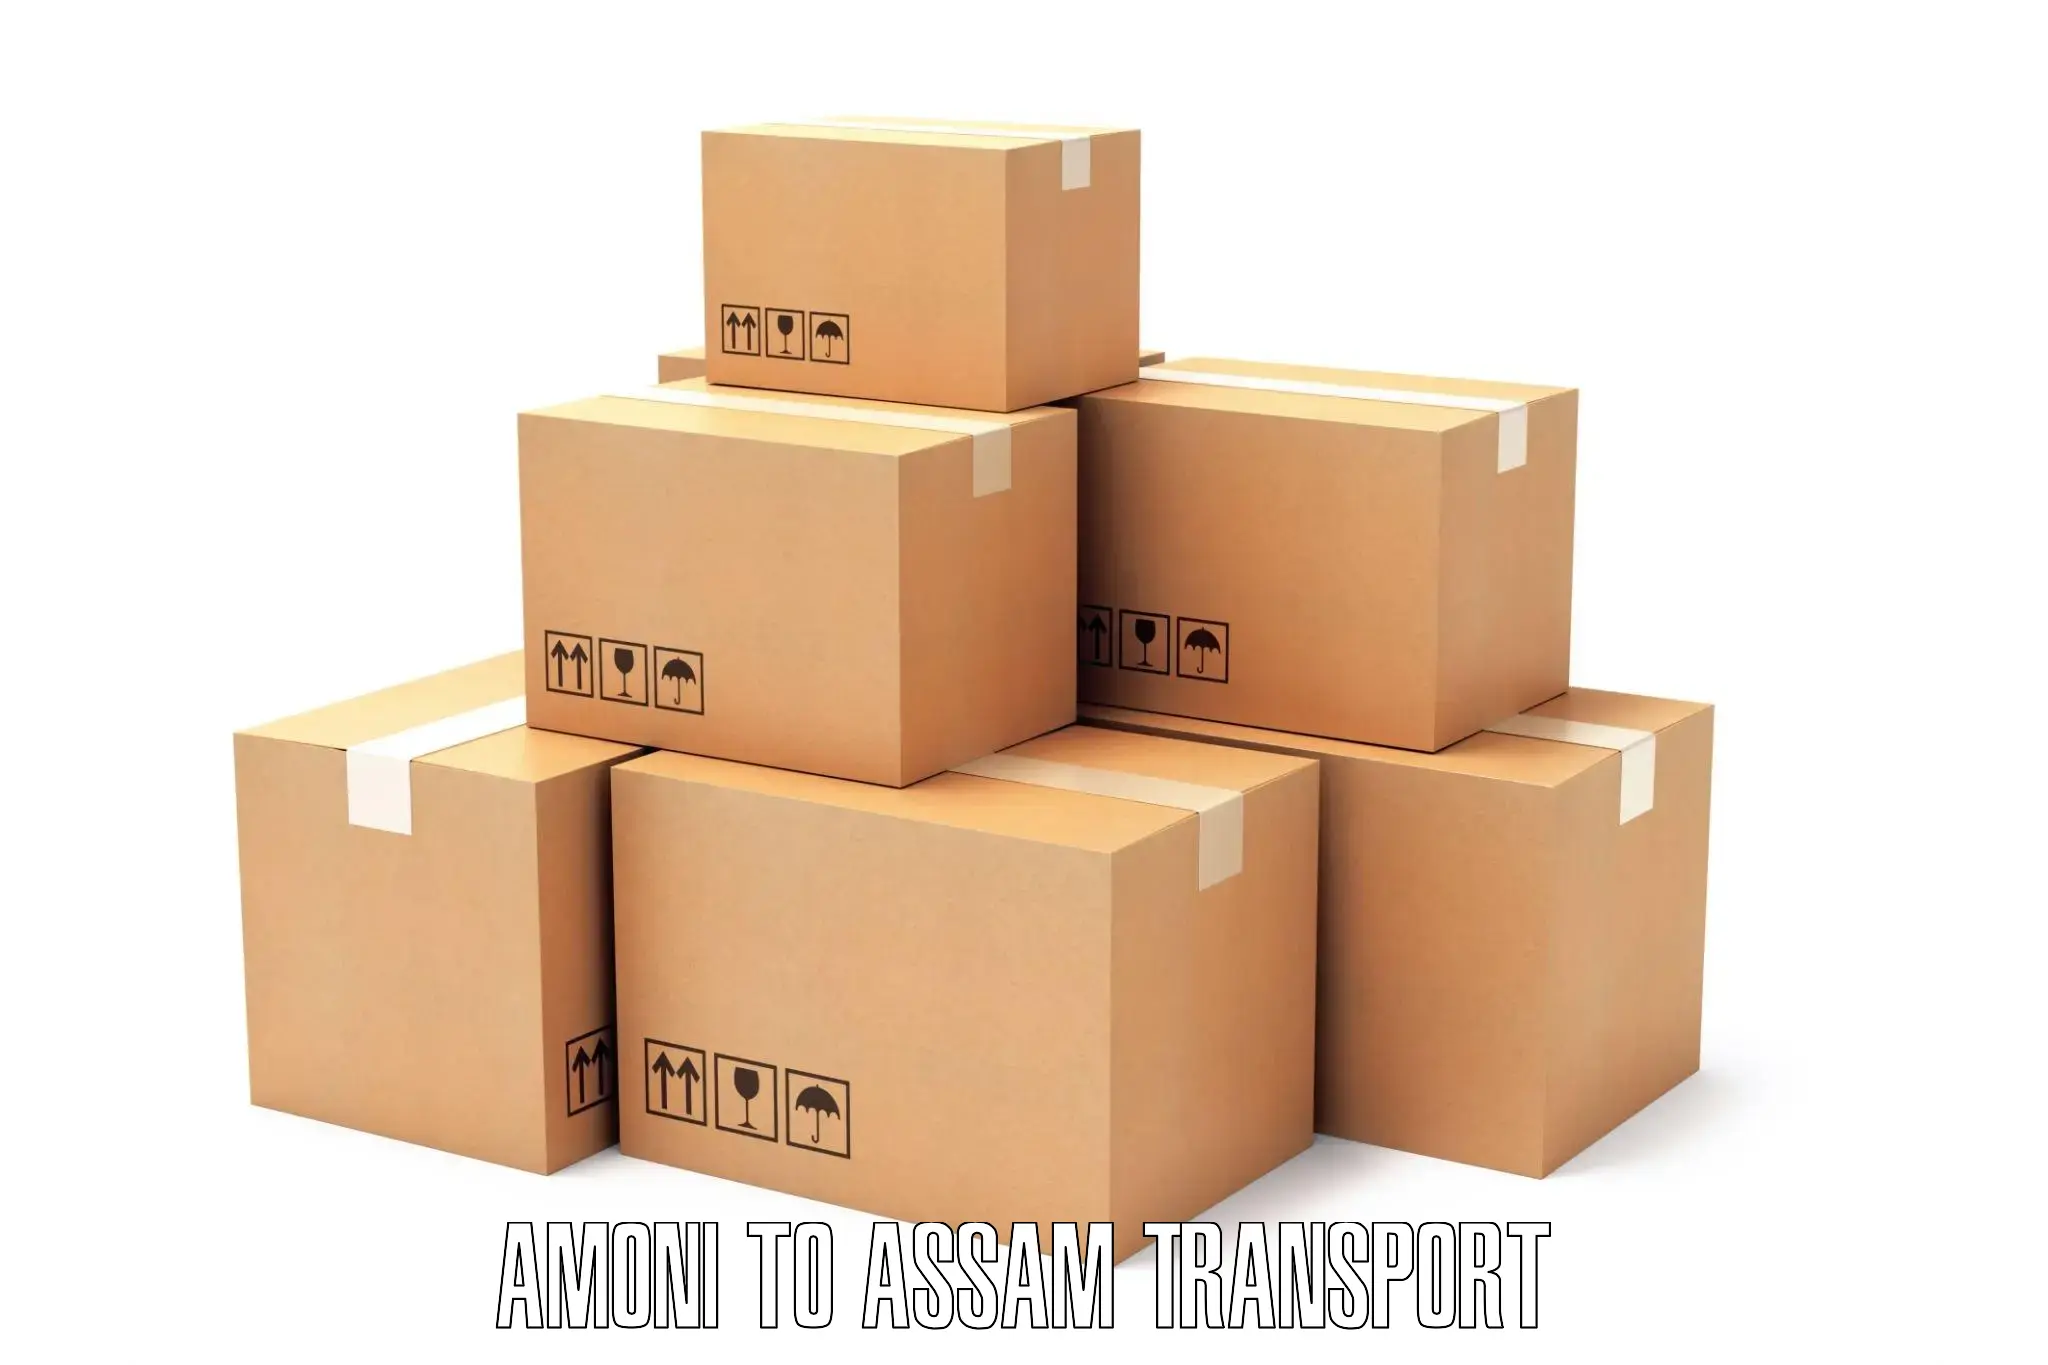 Online transport booking Amoni to Tamarhat